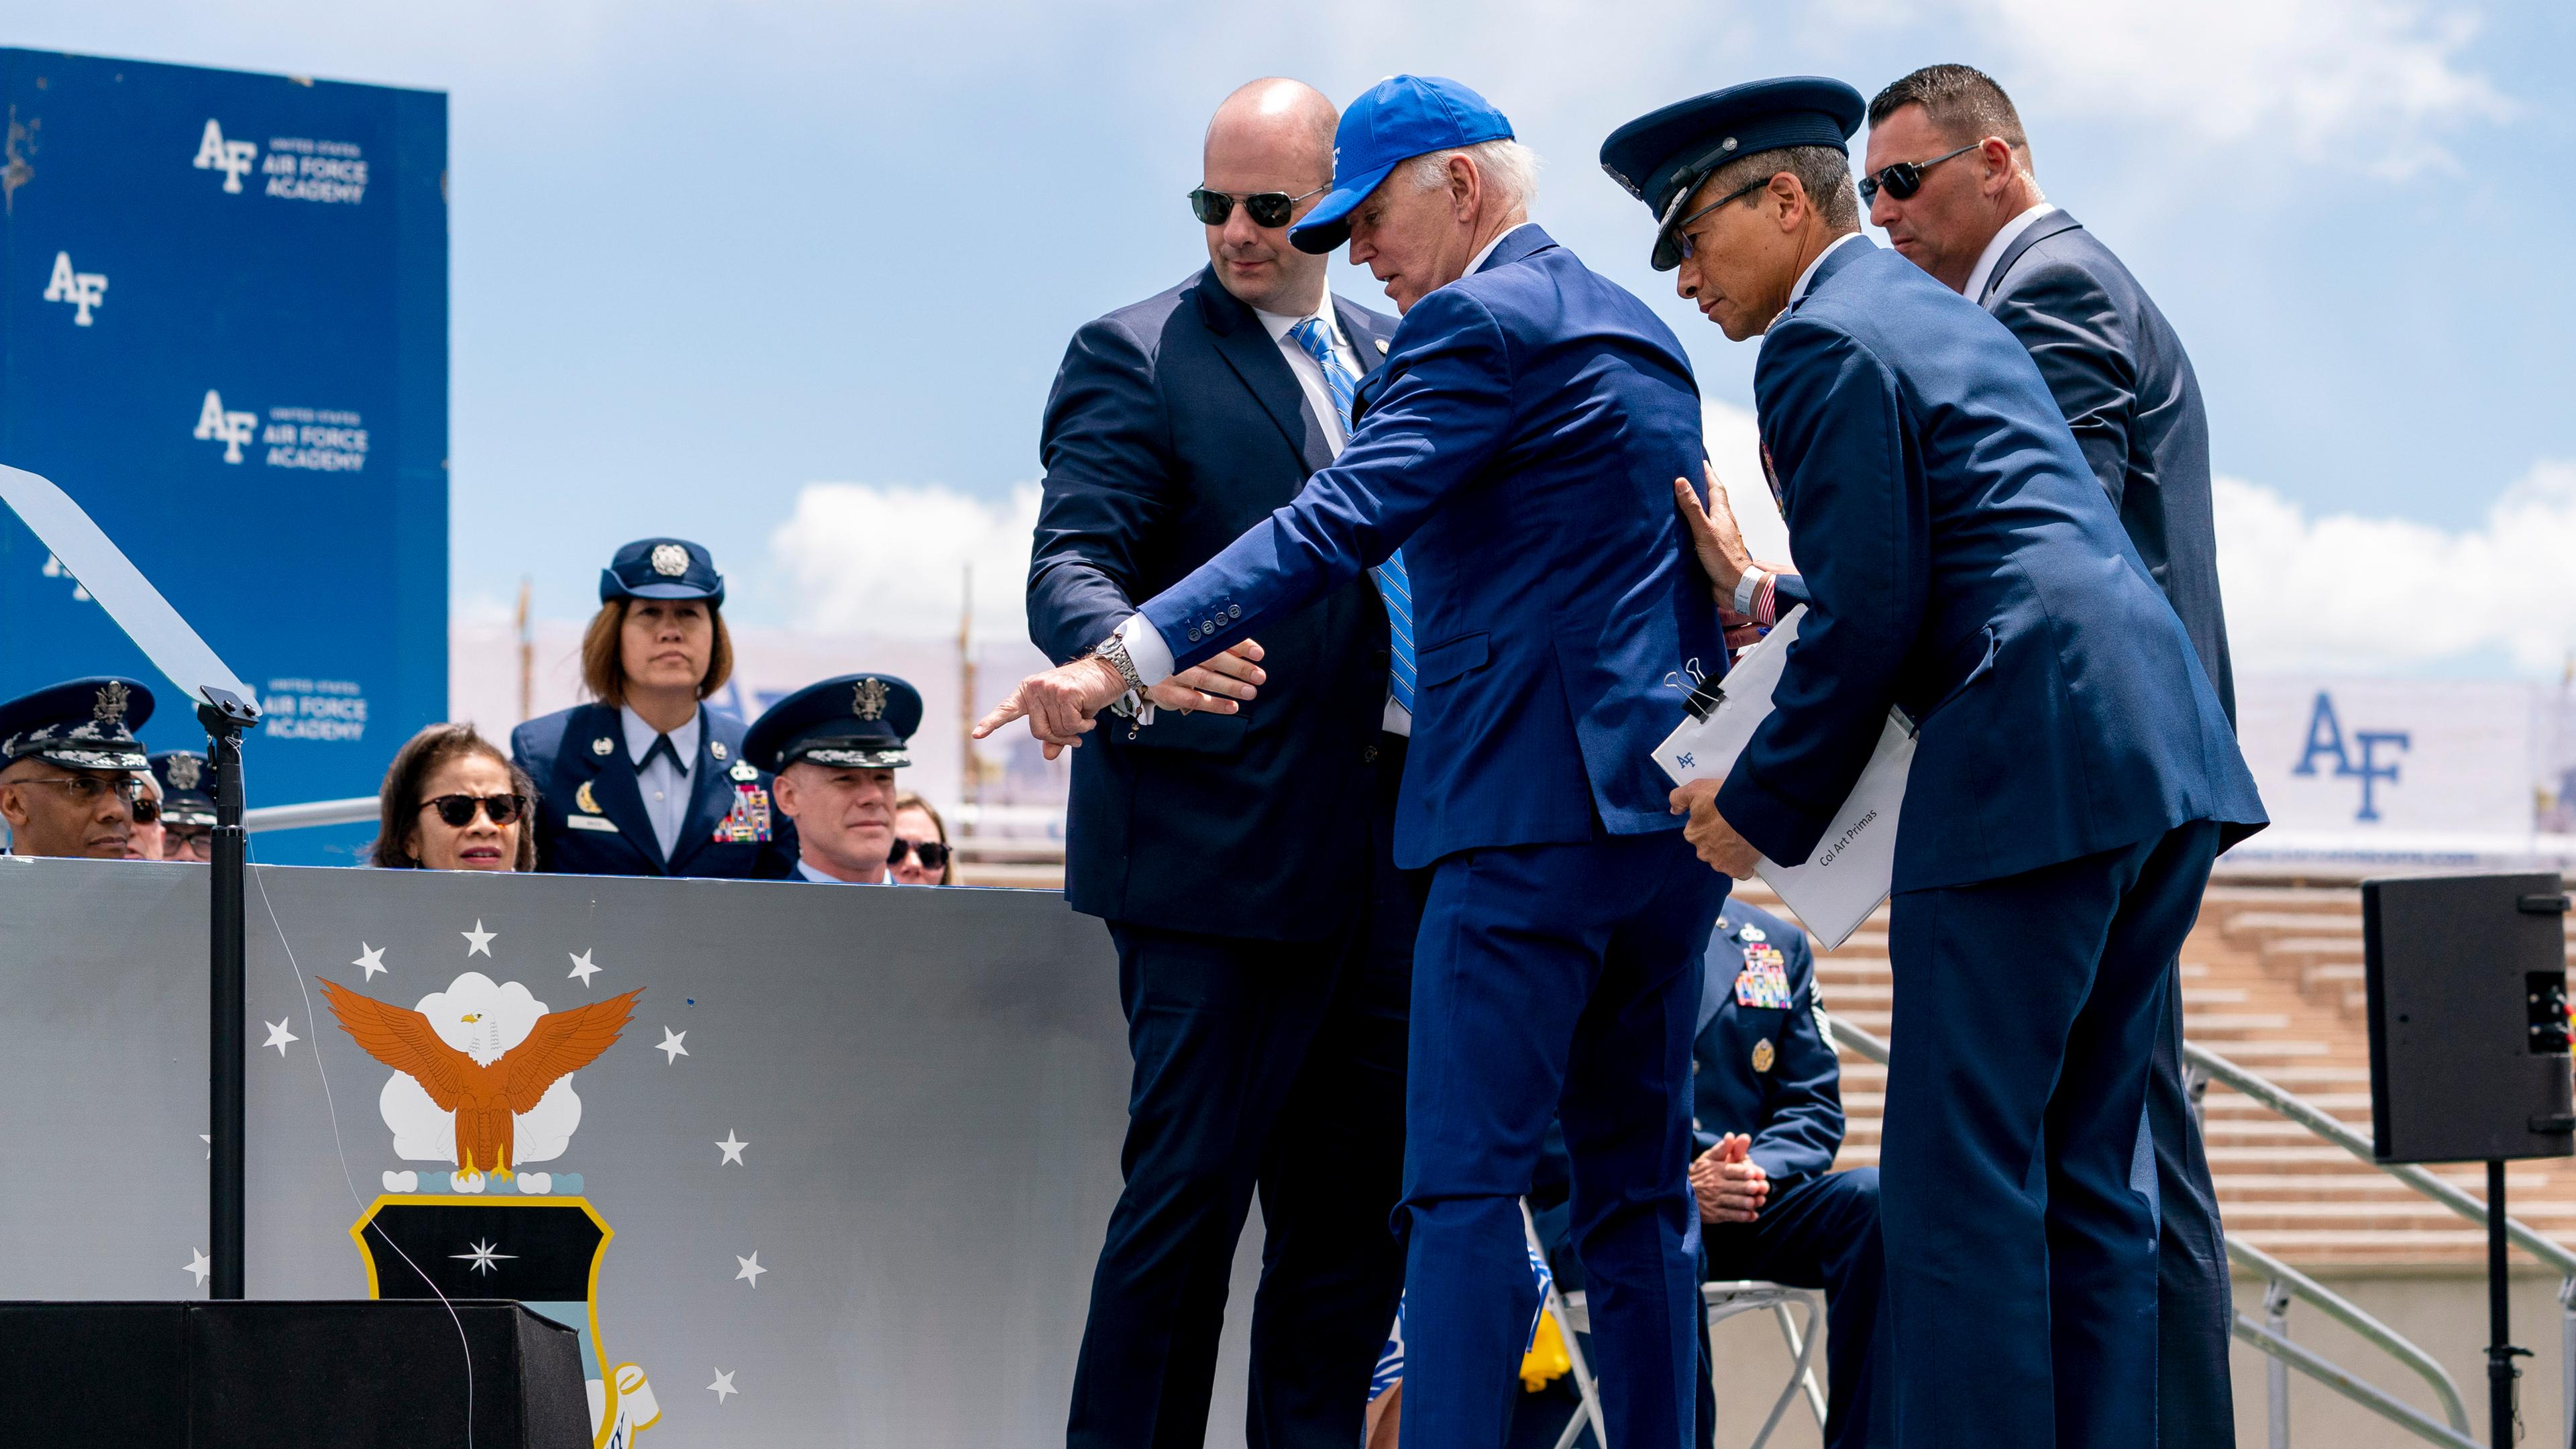 US-Präsident Biden zeigt nach seinem Sturz bei einer Absolventenfeier der Air Force Academy auf den Sandsack, über den er gestolpert ist.